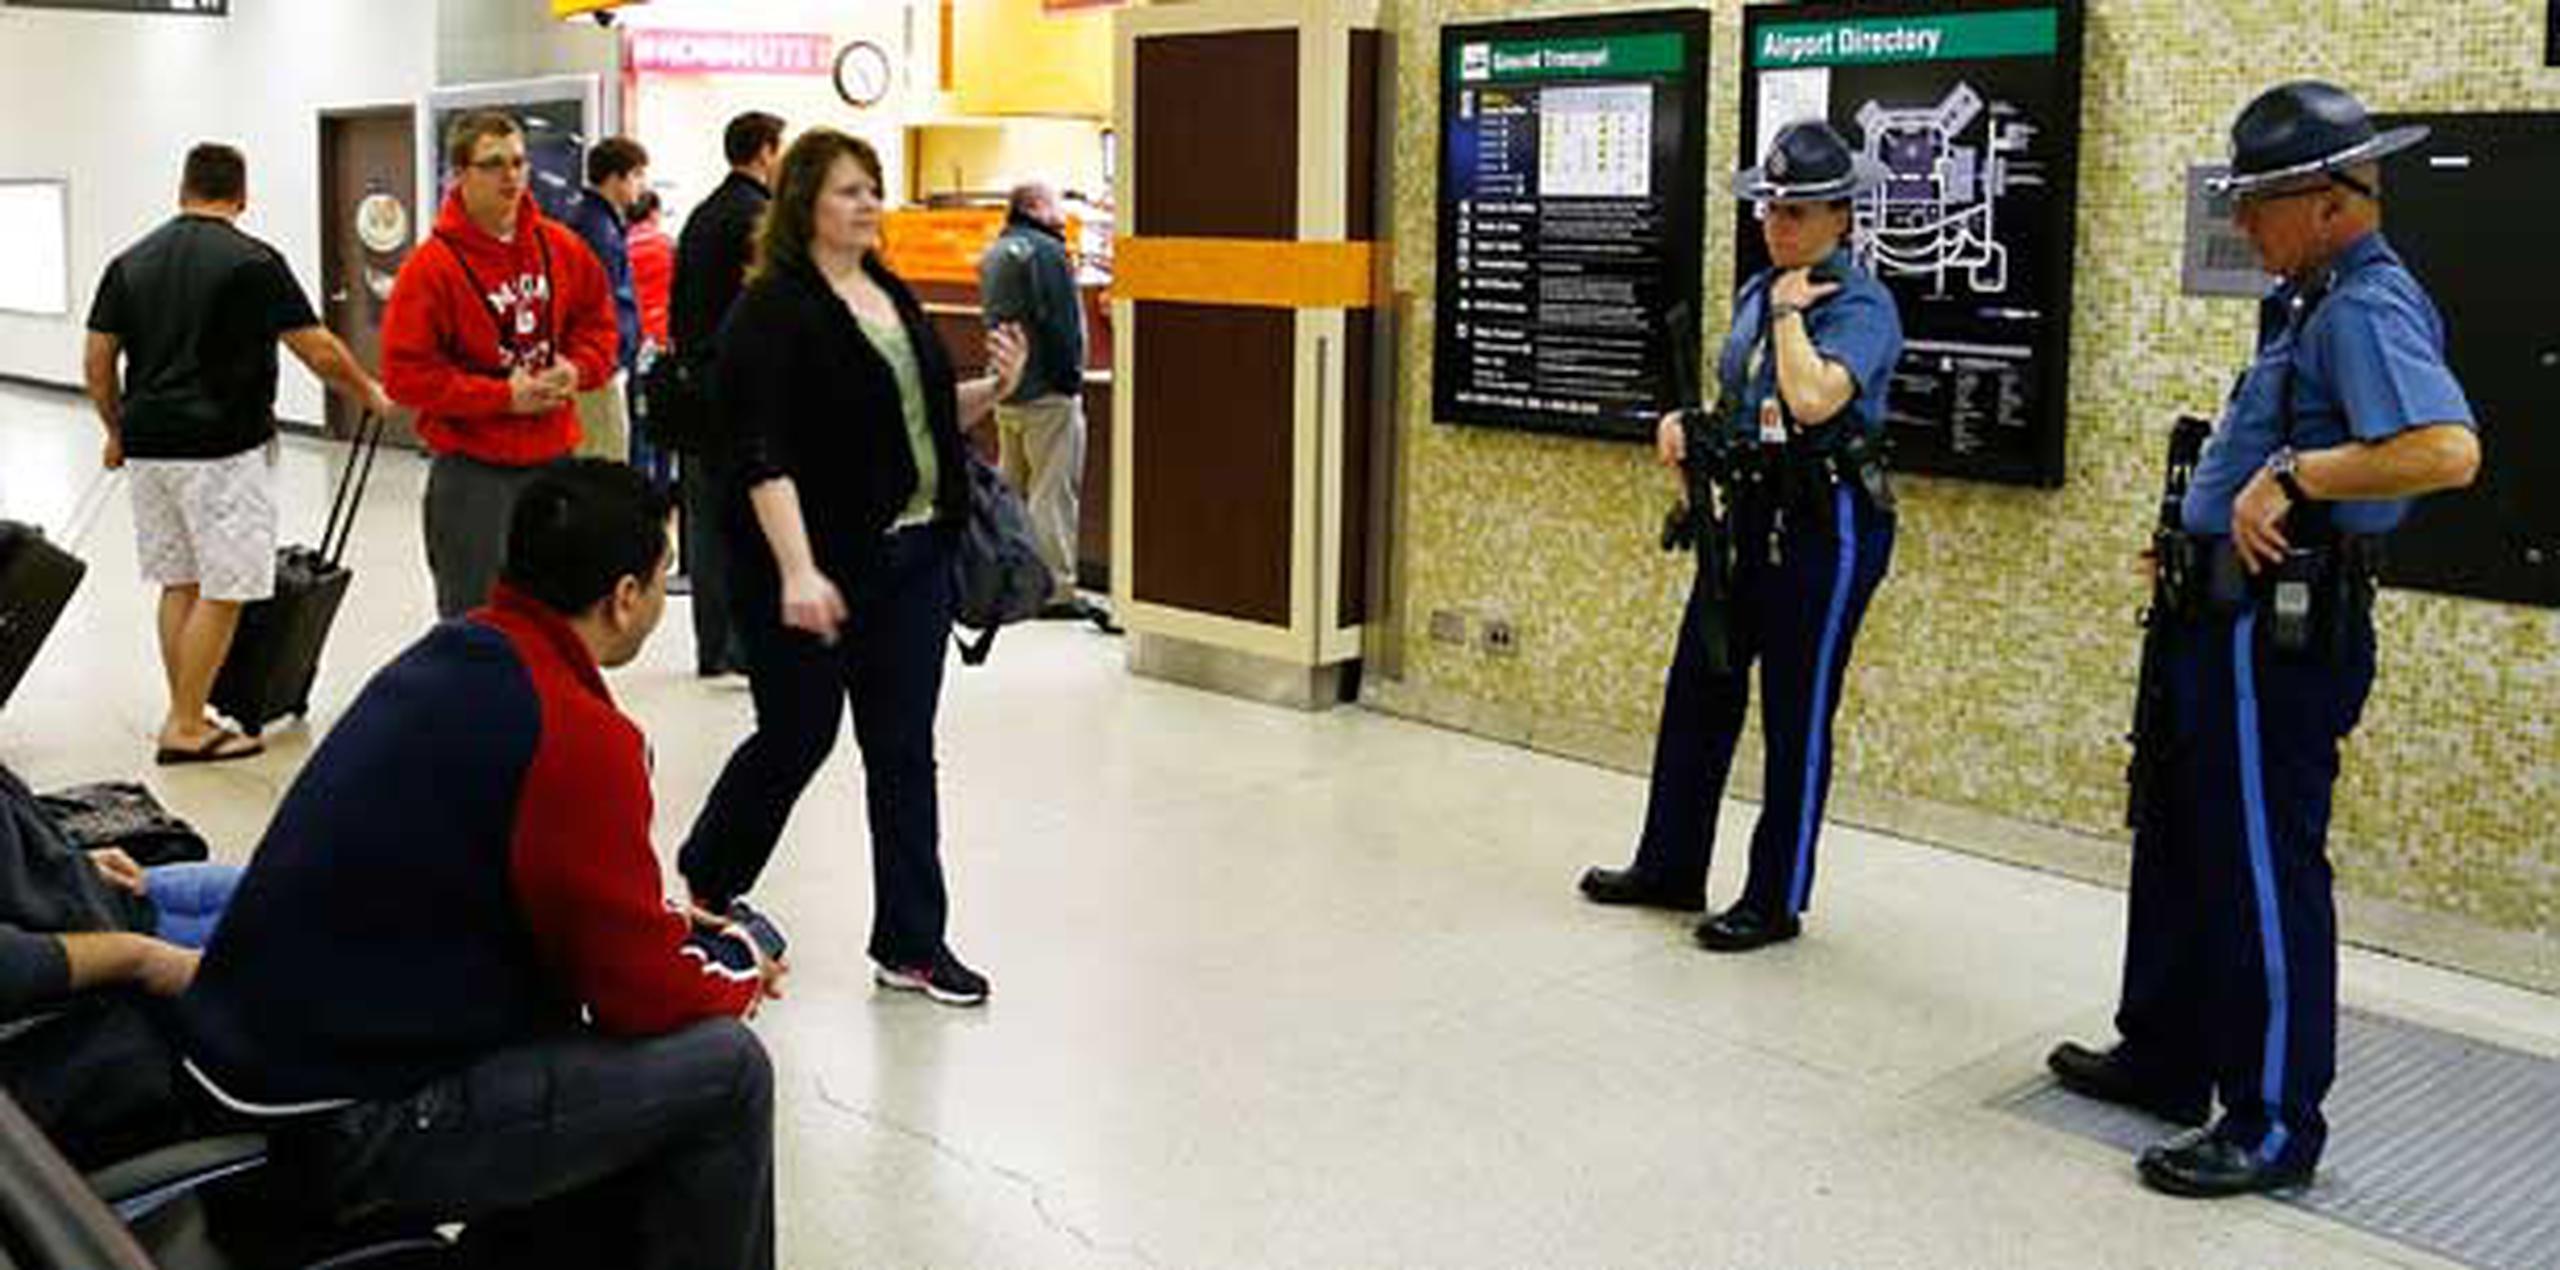 Policías prestan vigilancia en el área de reclamar el equipaje en el aeropuerto de Boston.  (Jared Wickerham/Getty Images/AFP)